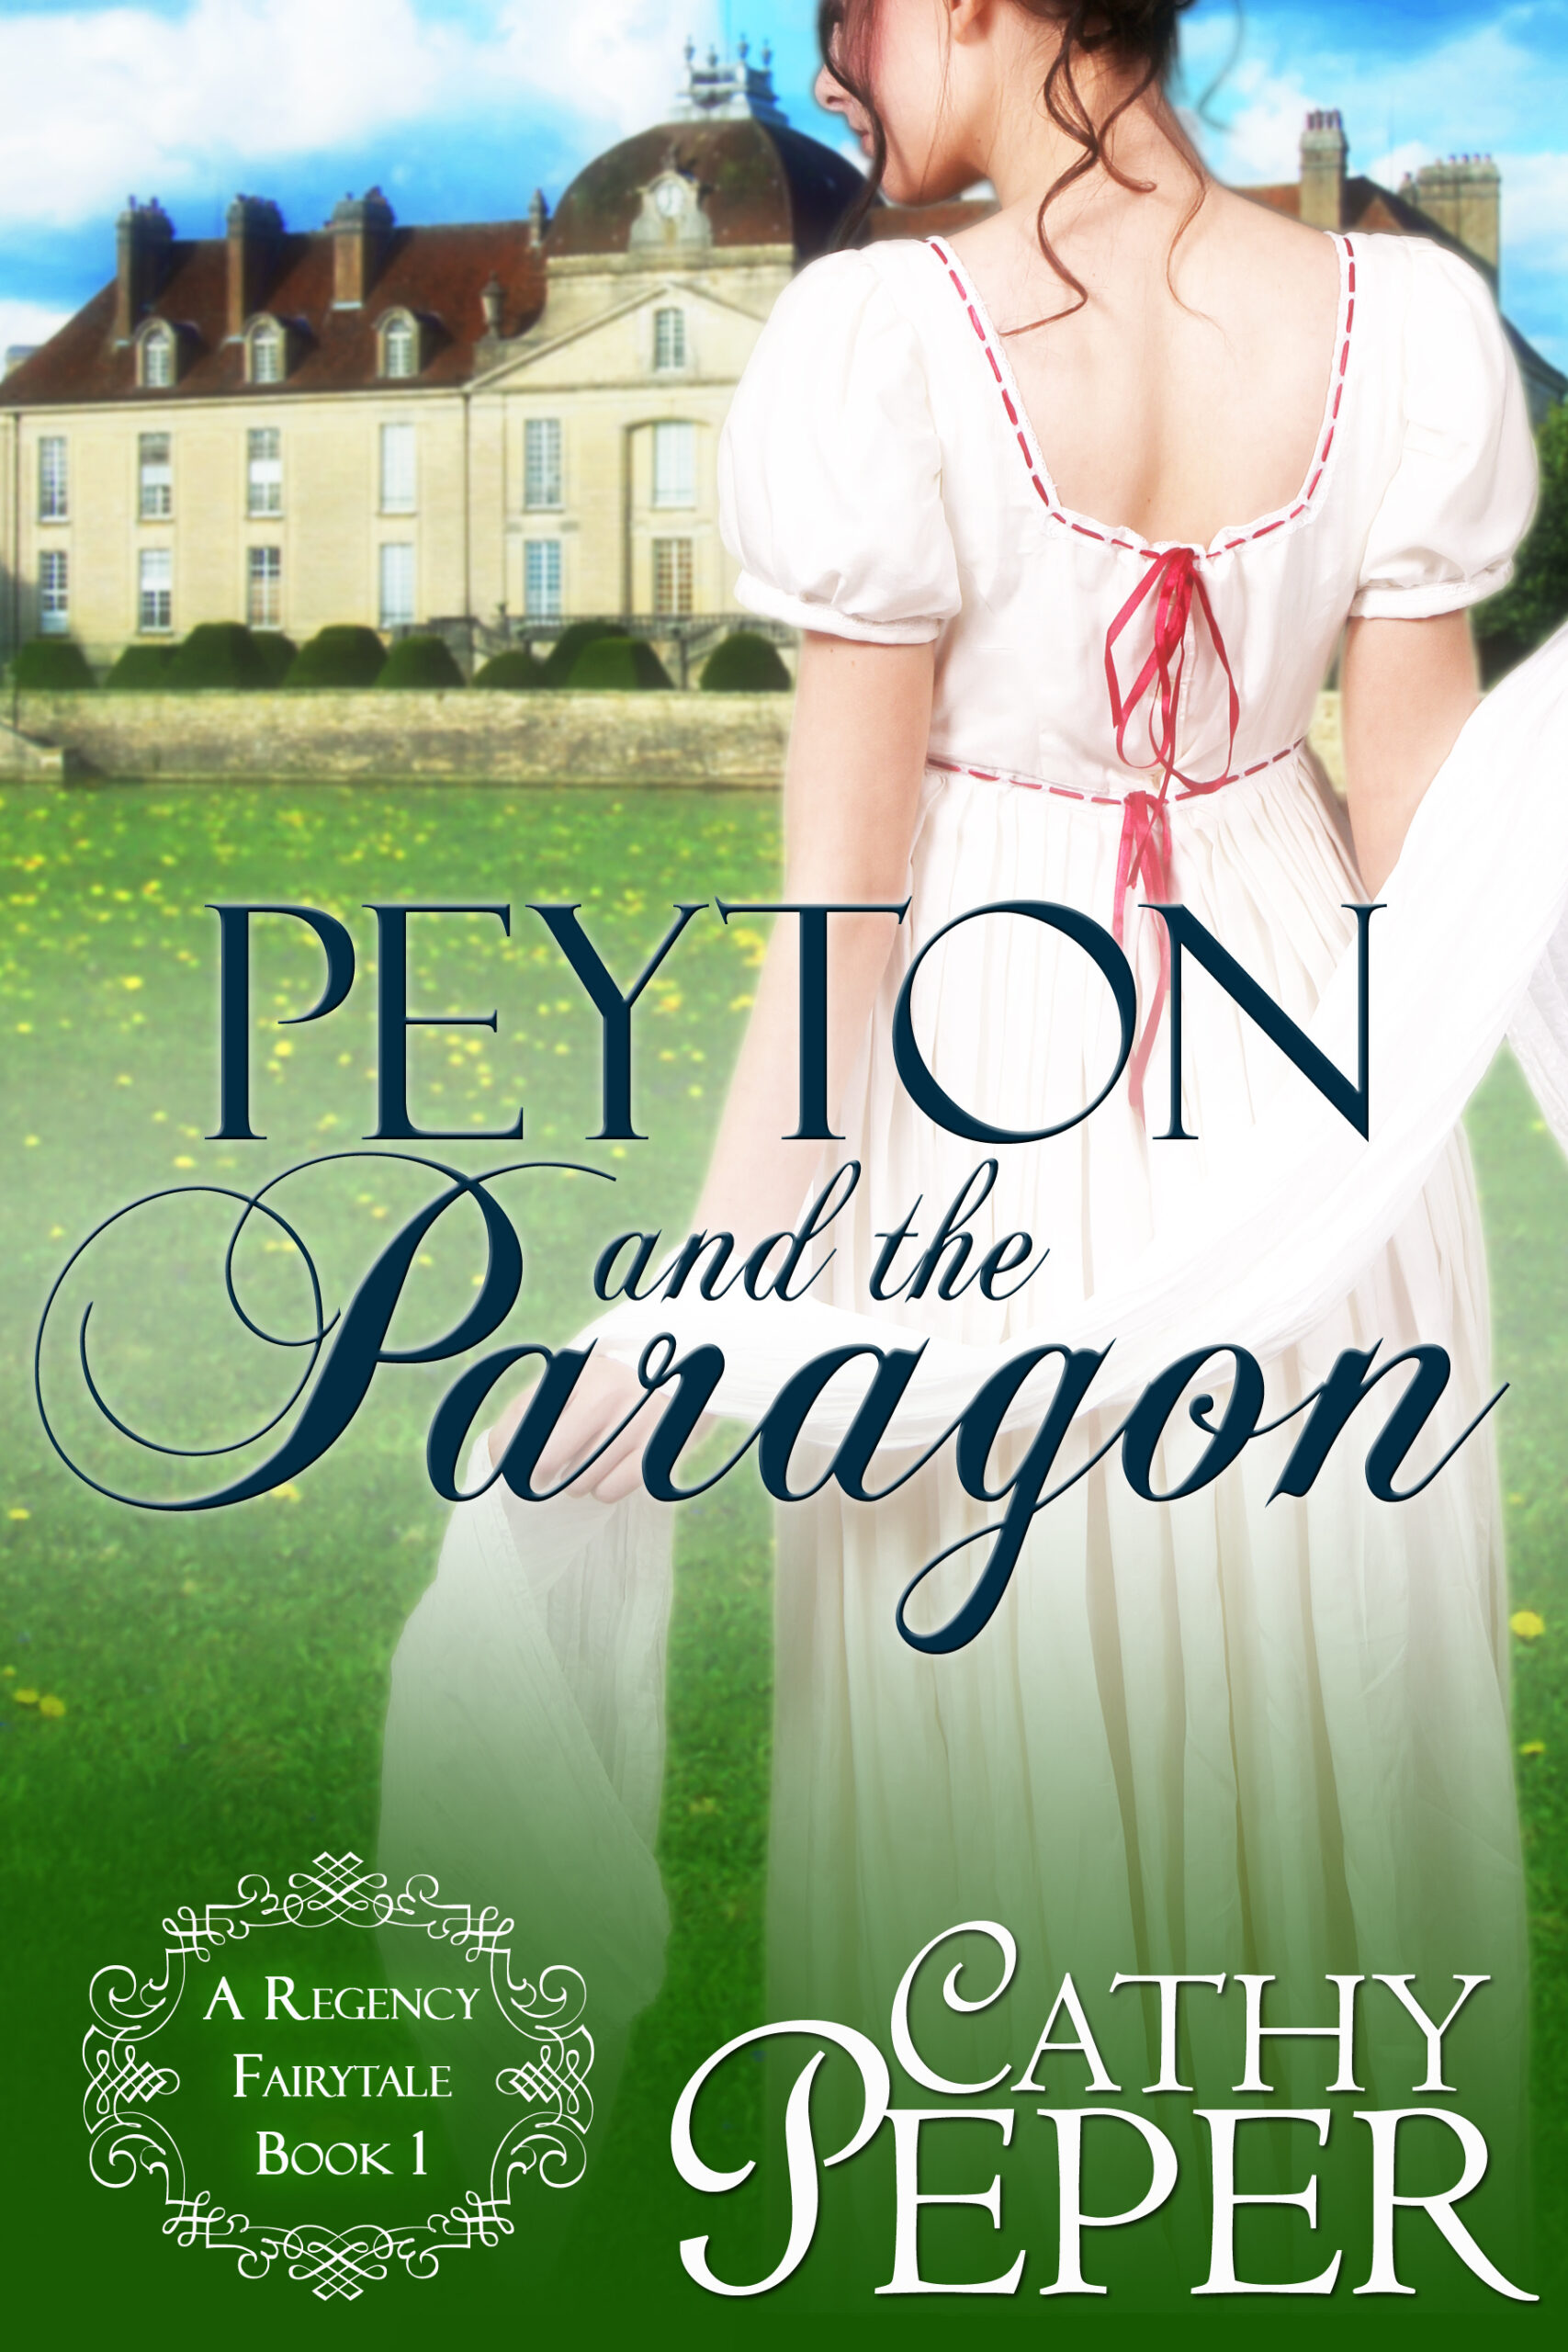 Peyton and the Paragon